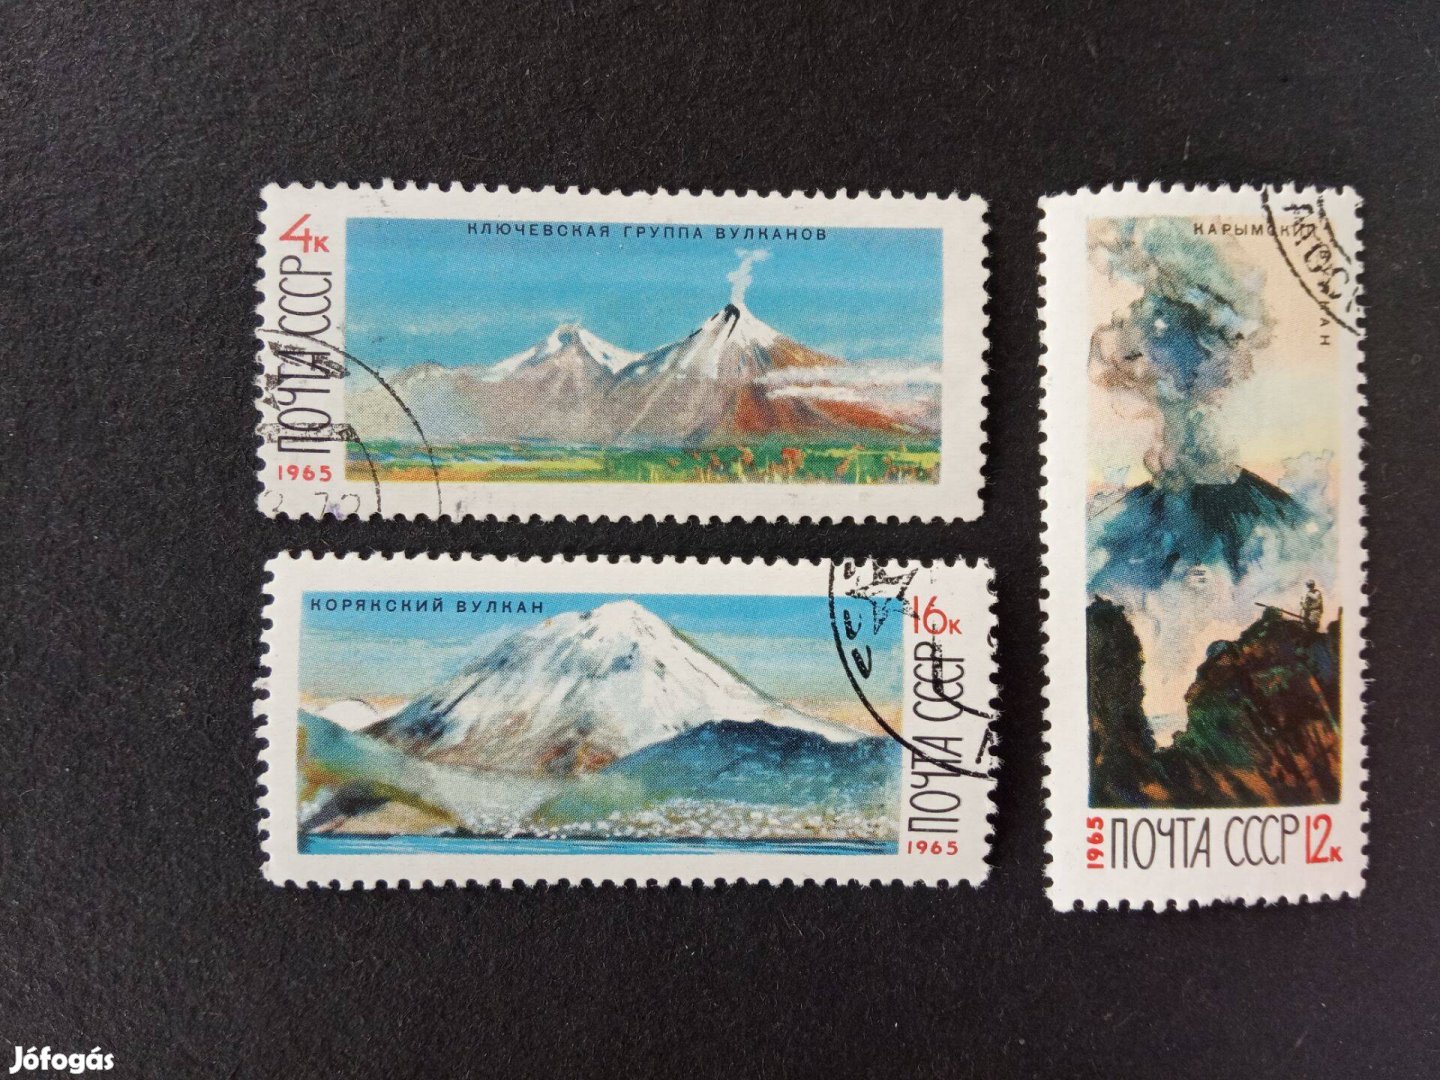 Szovjetunió 1965 Kamcsatka vulkánjai postatiszta bélyeg sor szívességi